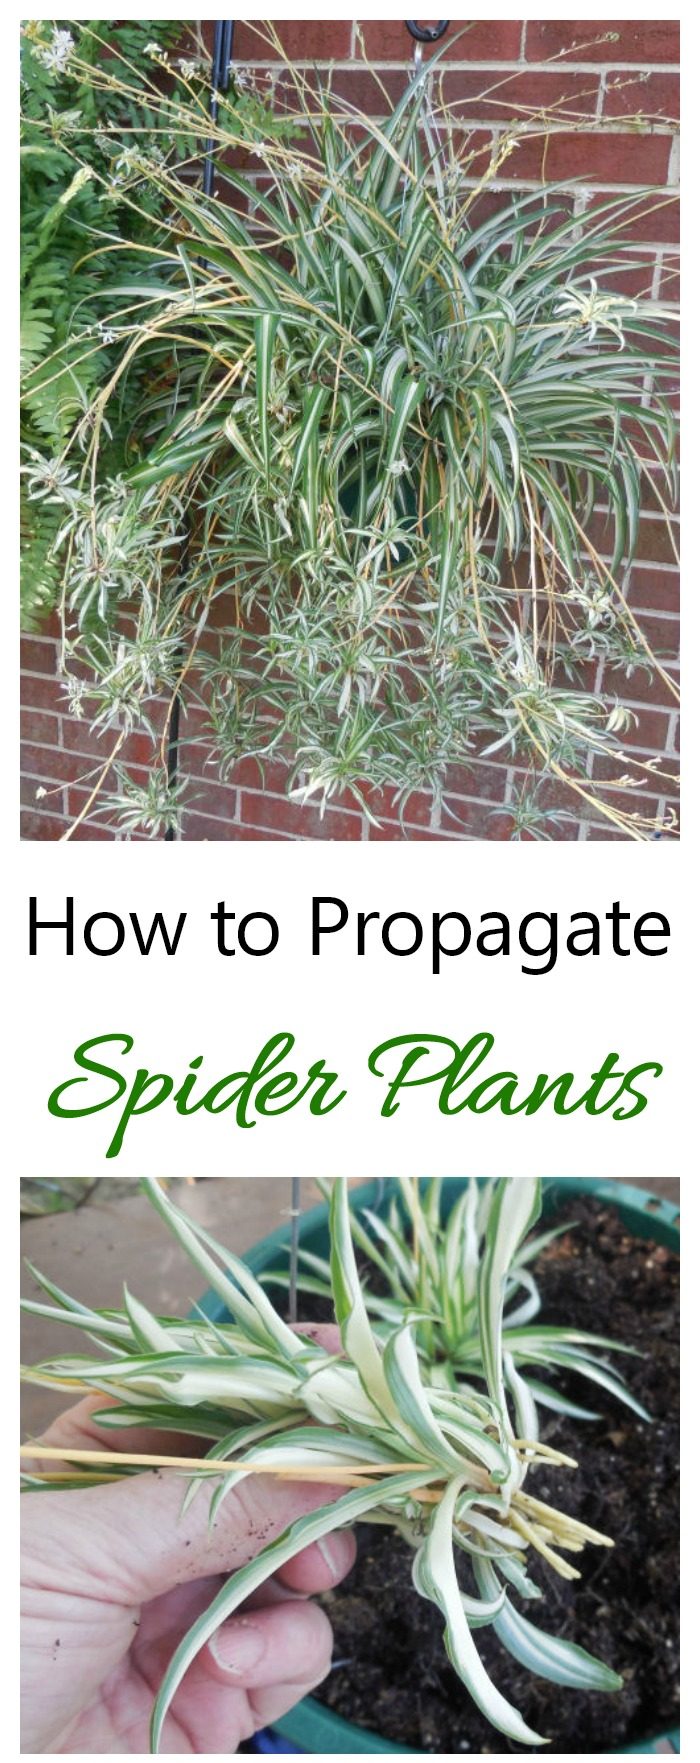 Cómo propagar plantas araña a partir de crías